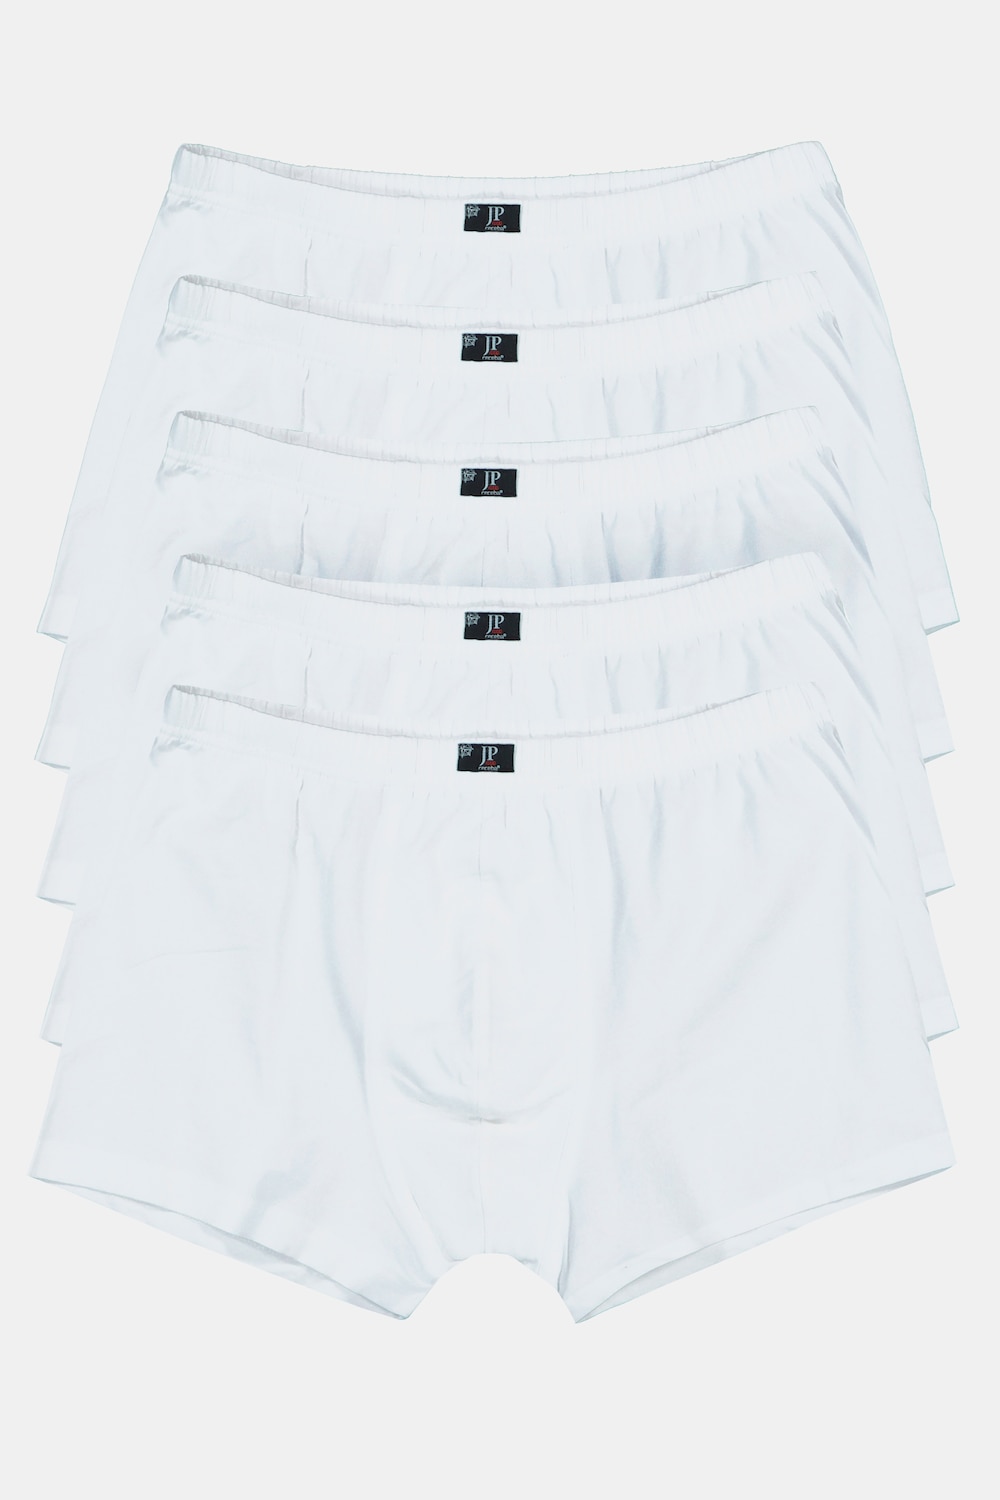 Grote Maten pants, Heren, wit, Maat: L, Katoen, JP1880